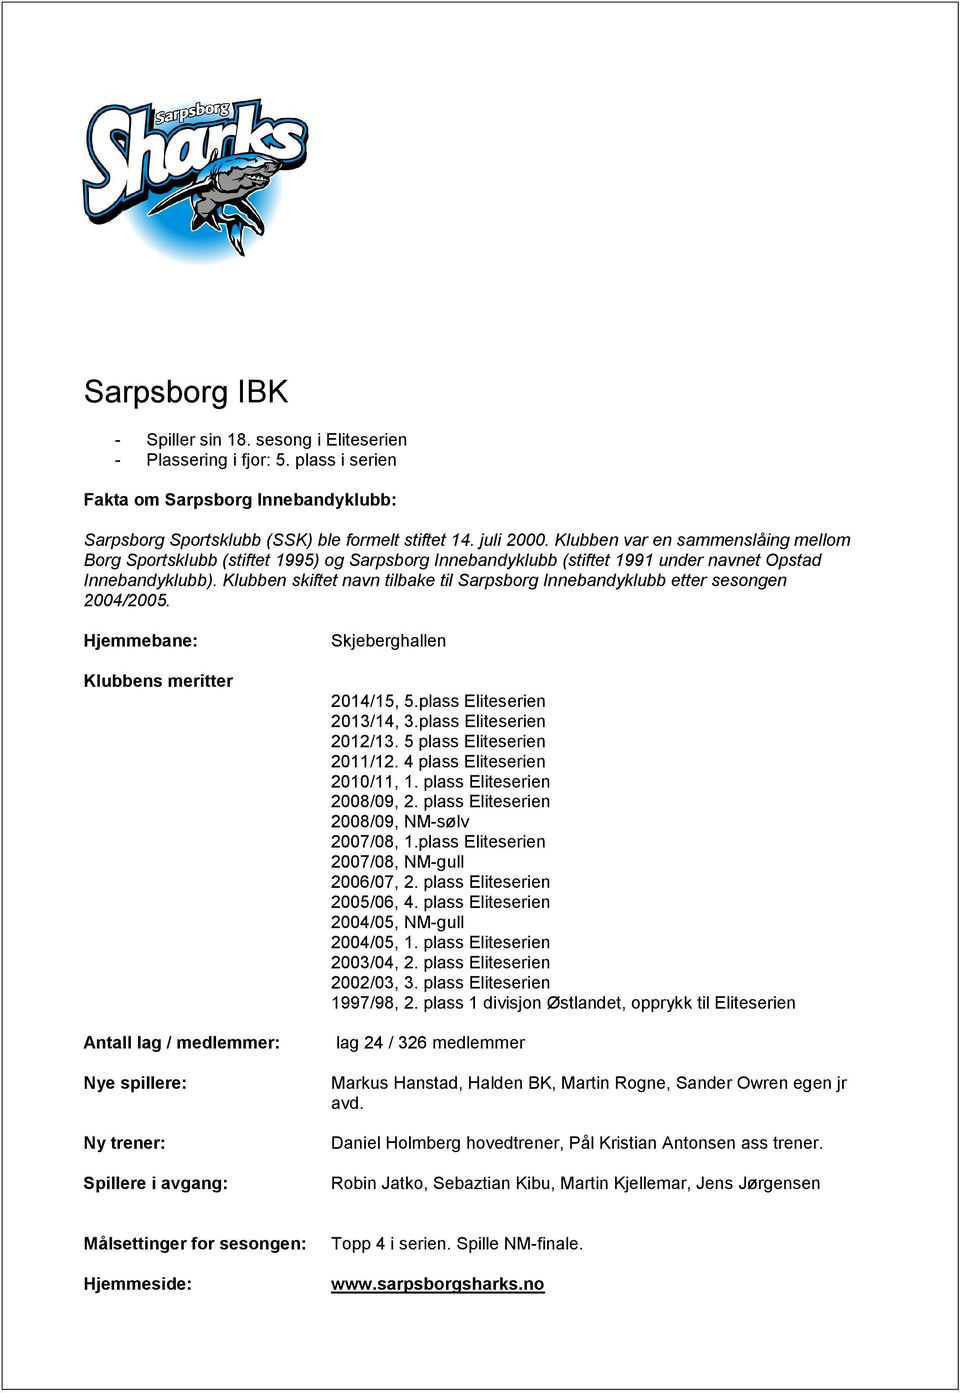 Klubben skiftet navn tilbake til Sarpsborg Innebandyklubb etter sesongen 2004/2005.